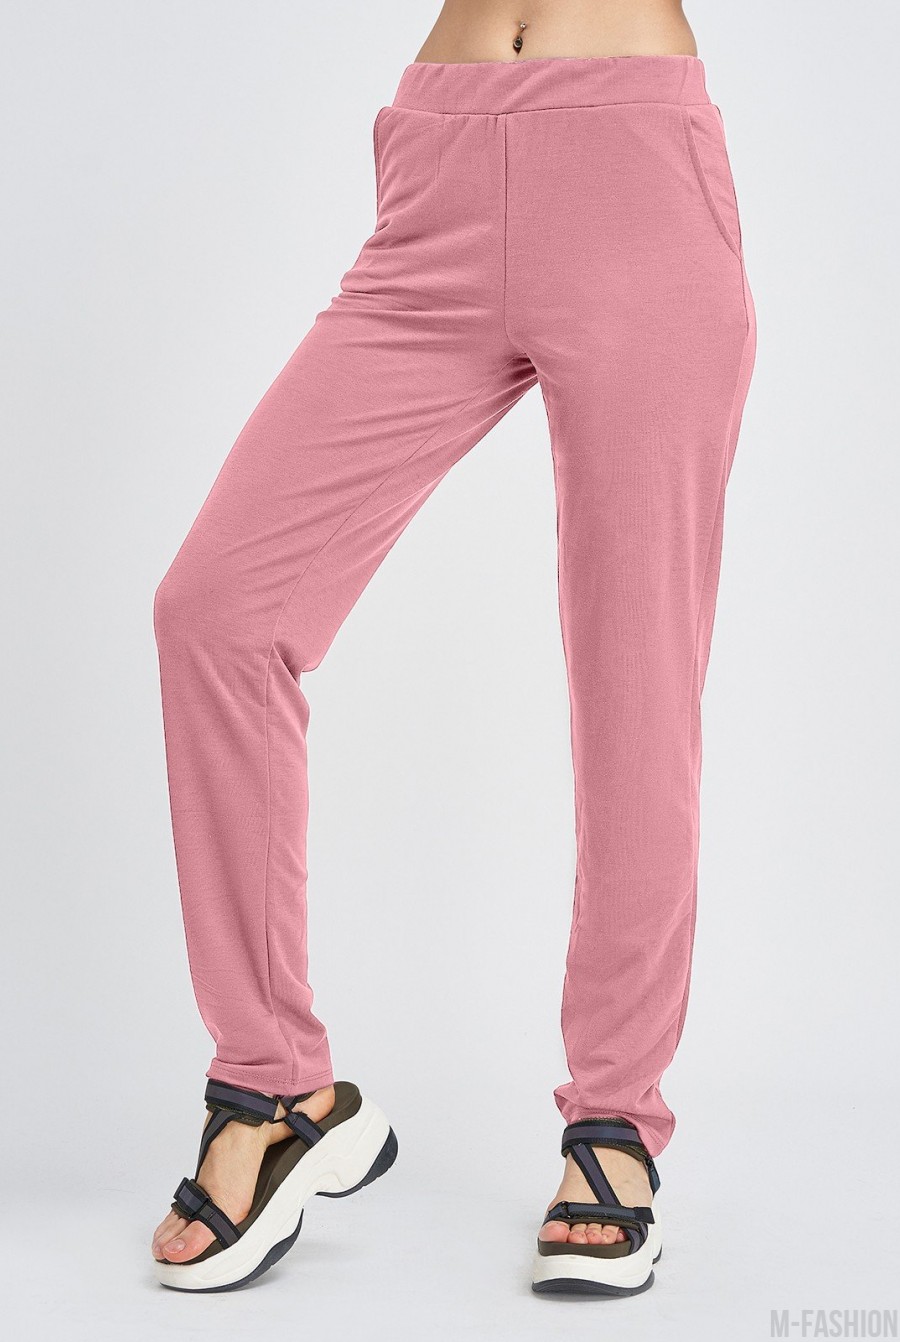 Розовые трикотажные штаны с карманами - Фото 1